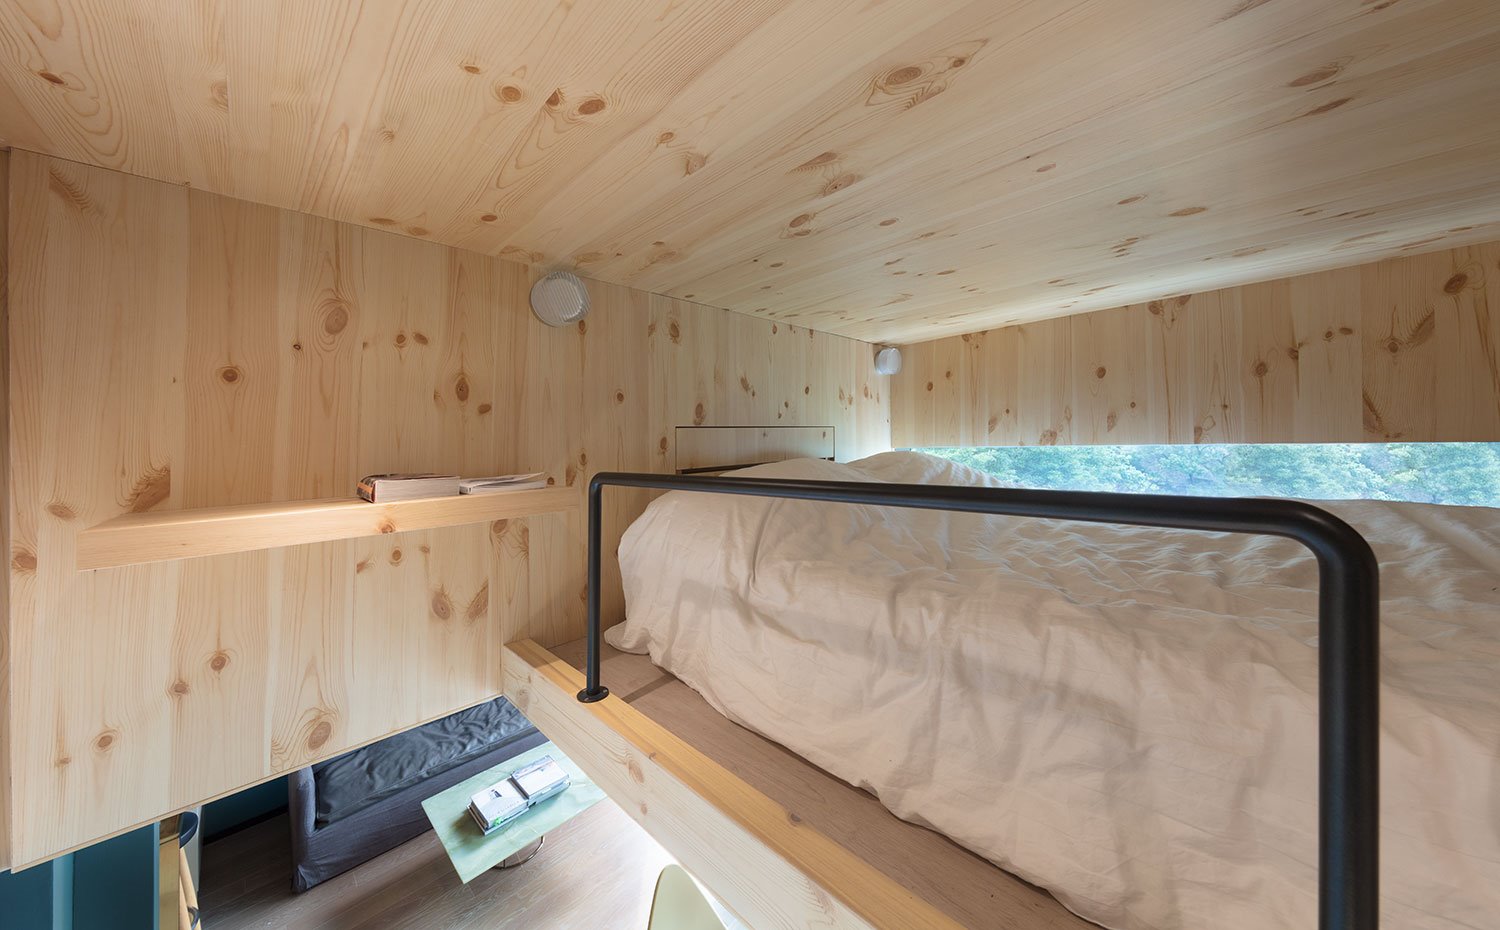 Dormitorio en hueco superior de vivienda, totalmente revestido de madera